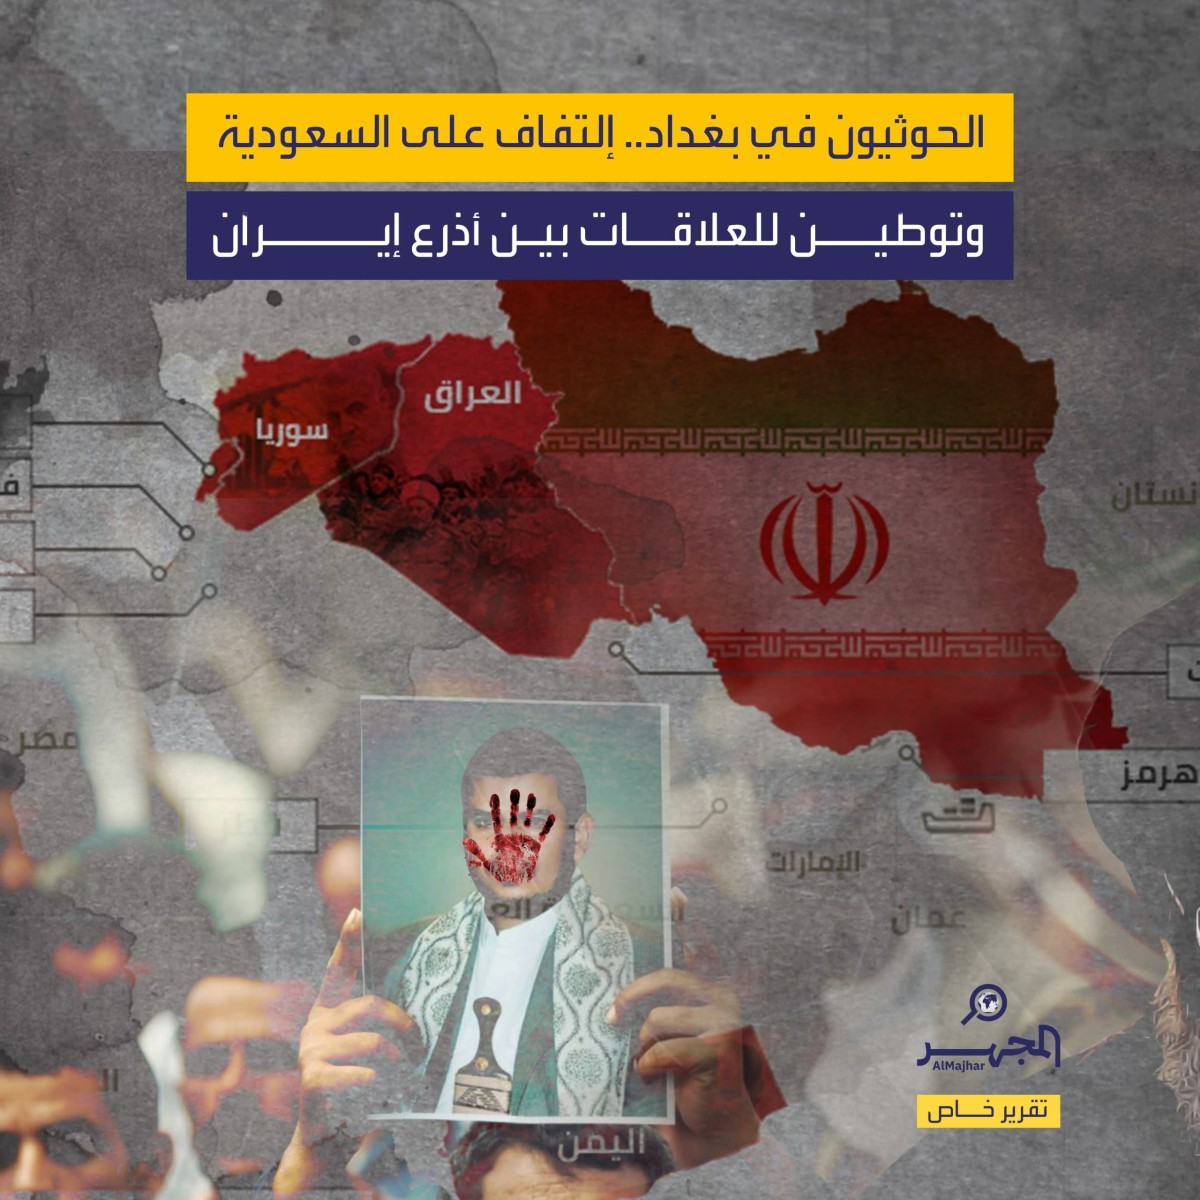 الحوثيون في بغداد.. التفاف على السعودية وتوطين للعلاقات بين أذرع إيران (تقرير خاص)